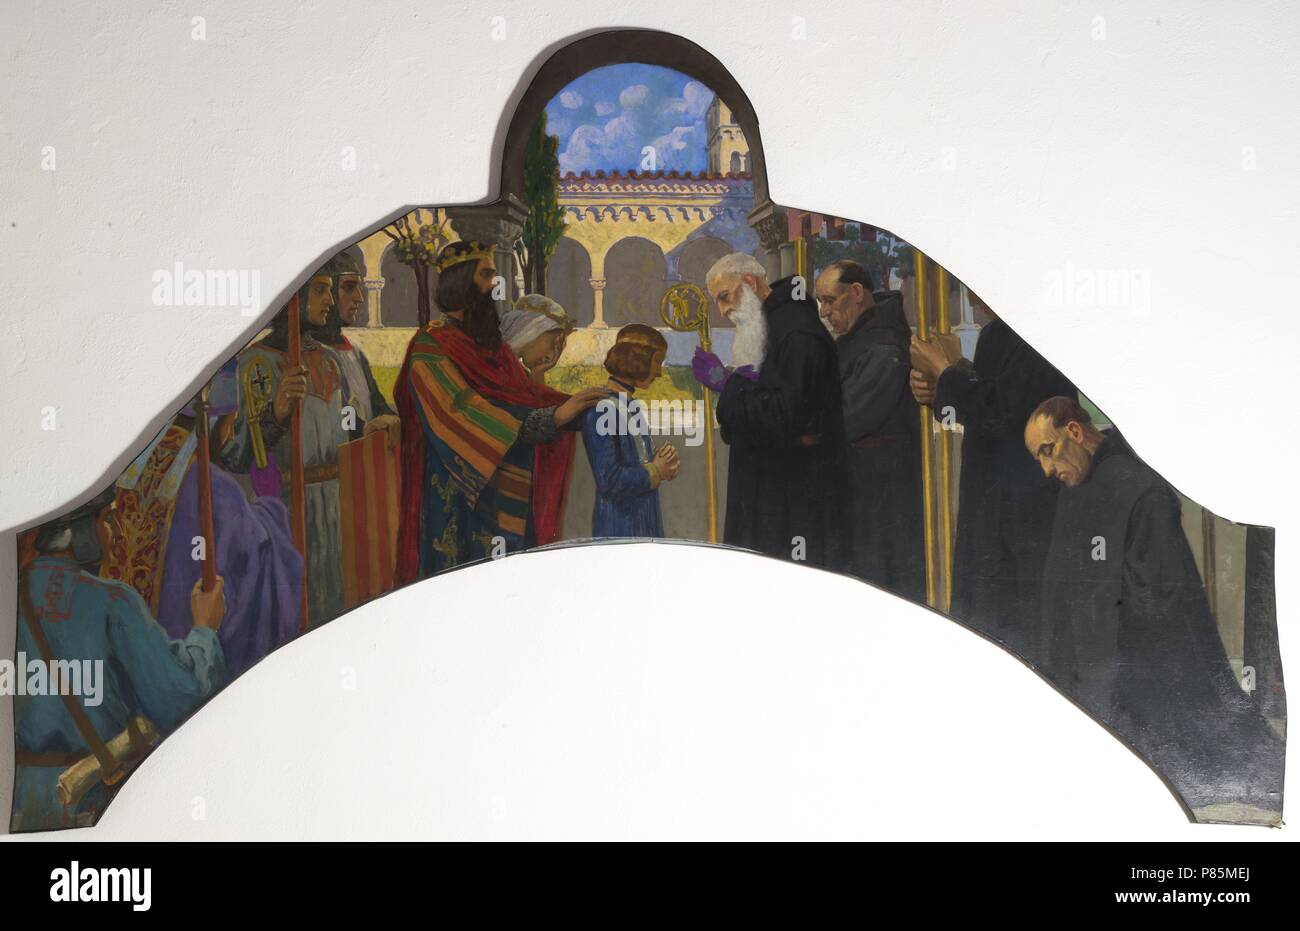 L'Offrande de Radulf. Wilfred le velu donne à son fils à l'abbé de Ripol. Autel baldaquin de l'église de Saint Mary's de Ripoll monastère, 1912. Musée de Ripoll, en Catalogne, Espagne. Banque D'Images